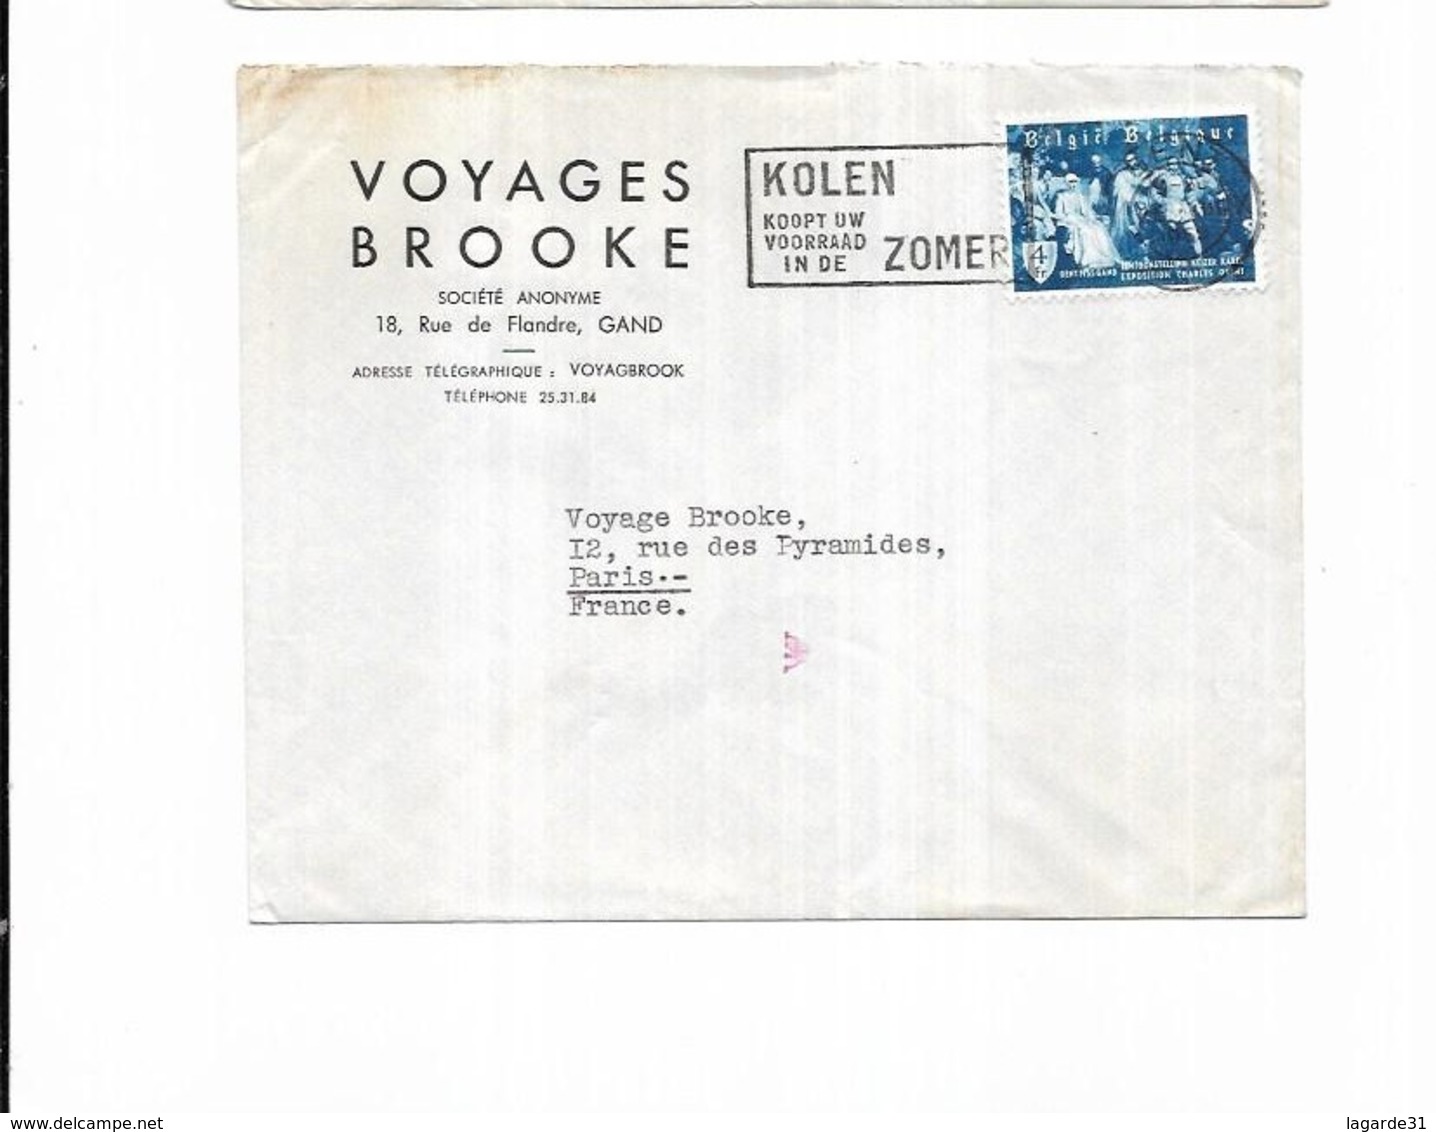 1955 Belgique Voyages Brooke Gand KOLEN KOOPT UW VOORRAAD IN DE ZOMER - Targhette